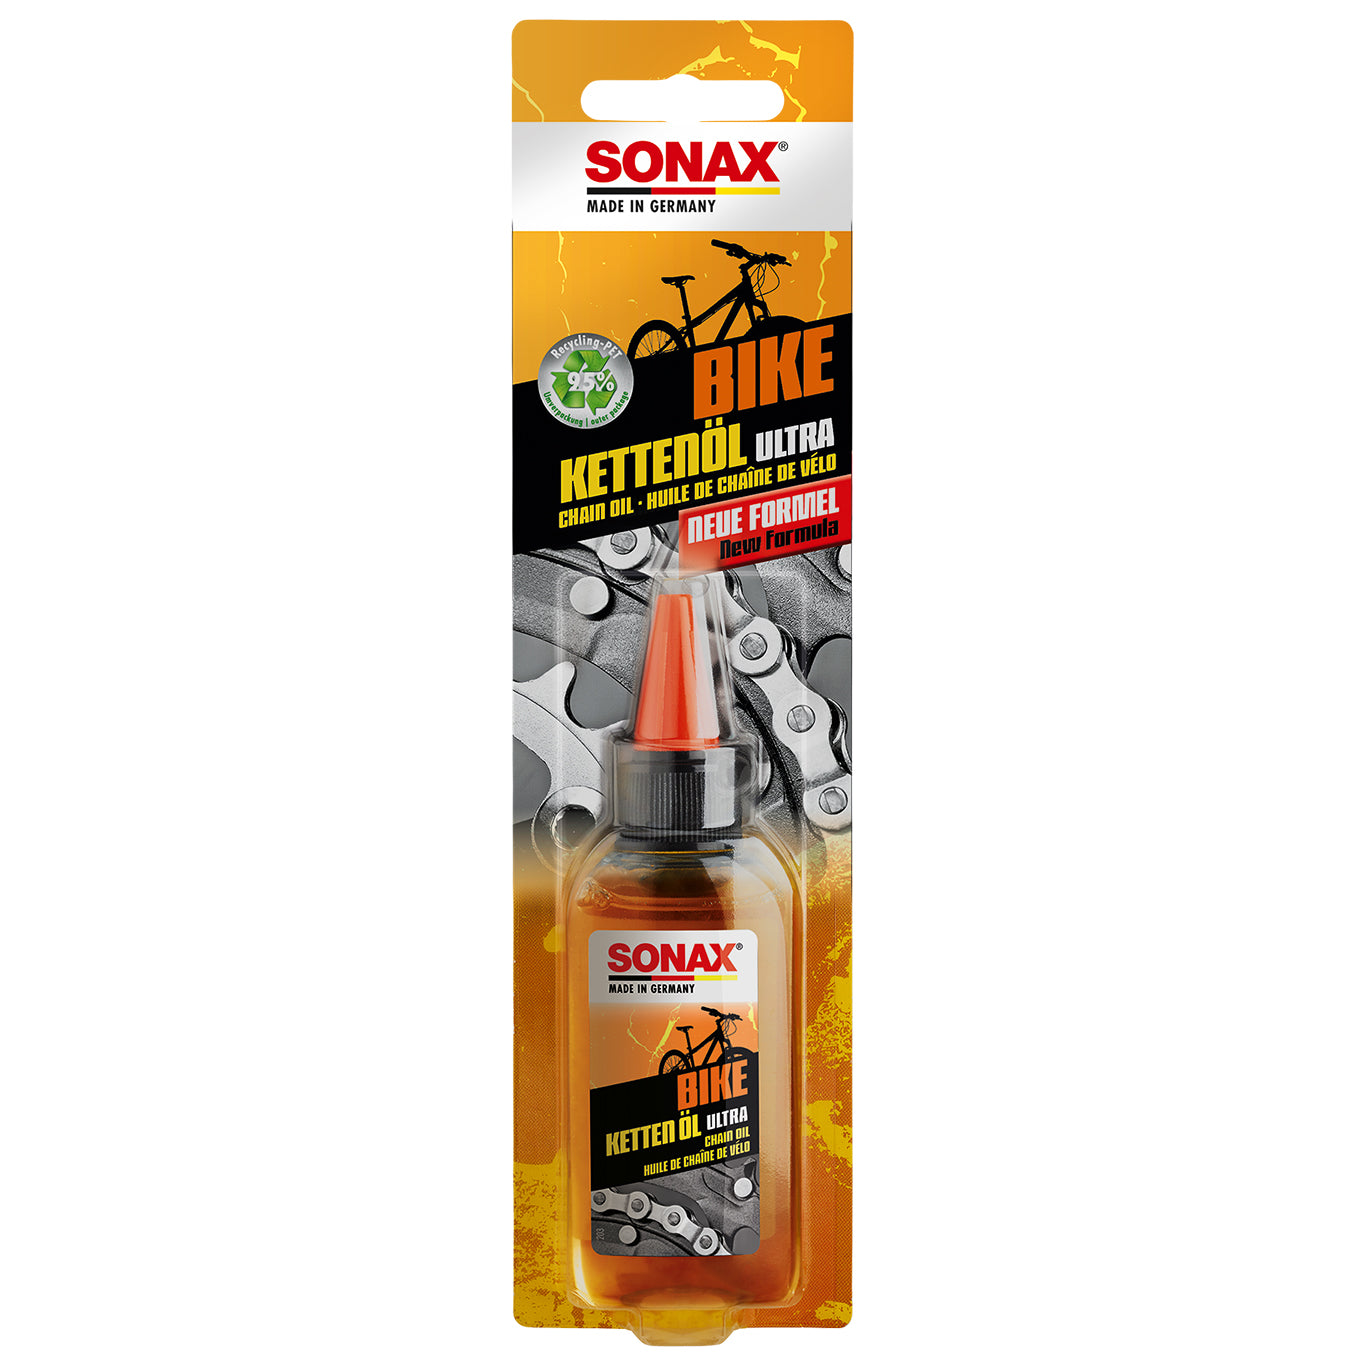 SONAX Bike Silicone Chain Care Oil 50ml